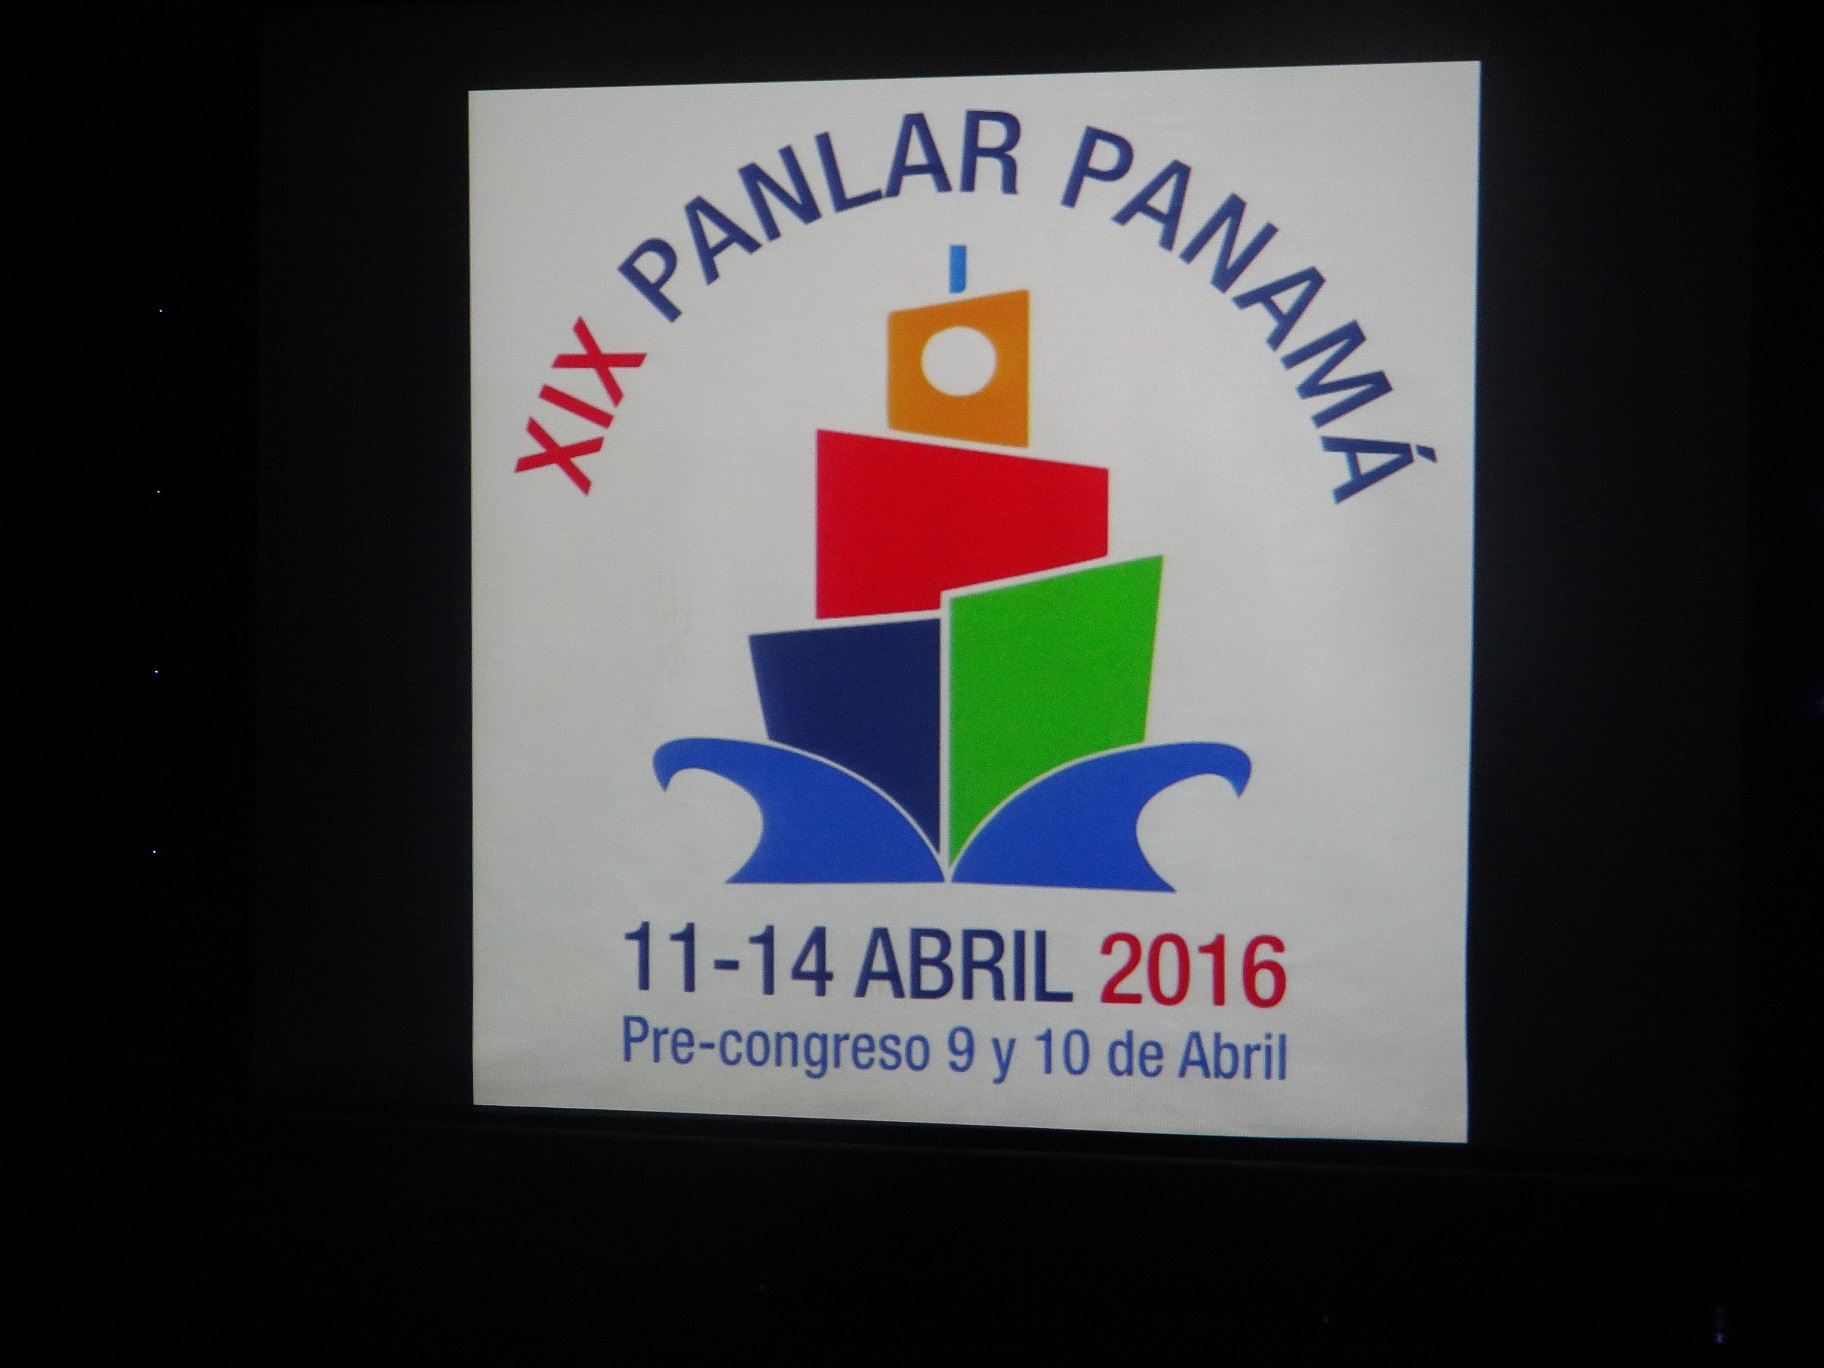 Panamá sede de congreso panamericano de reumatología